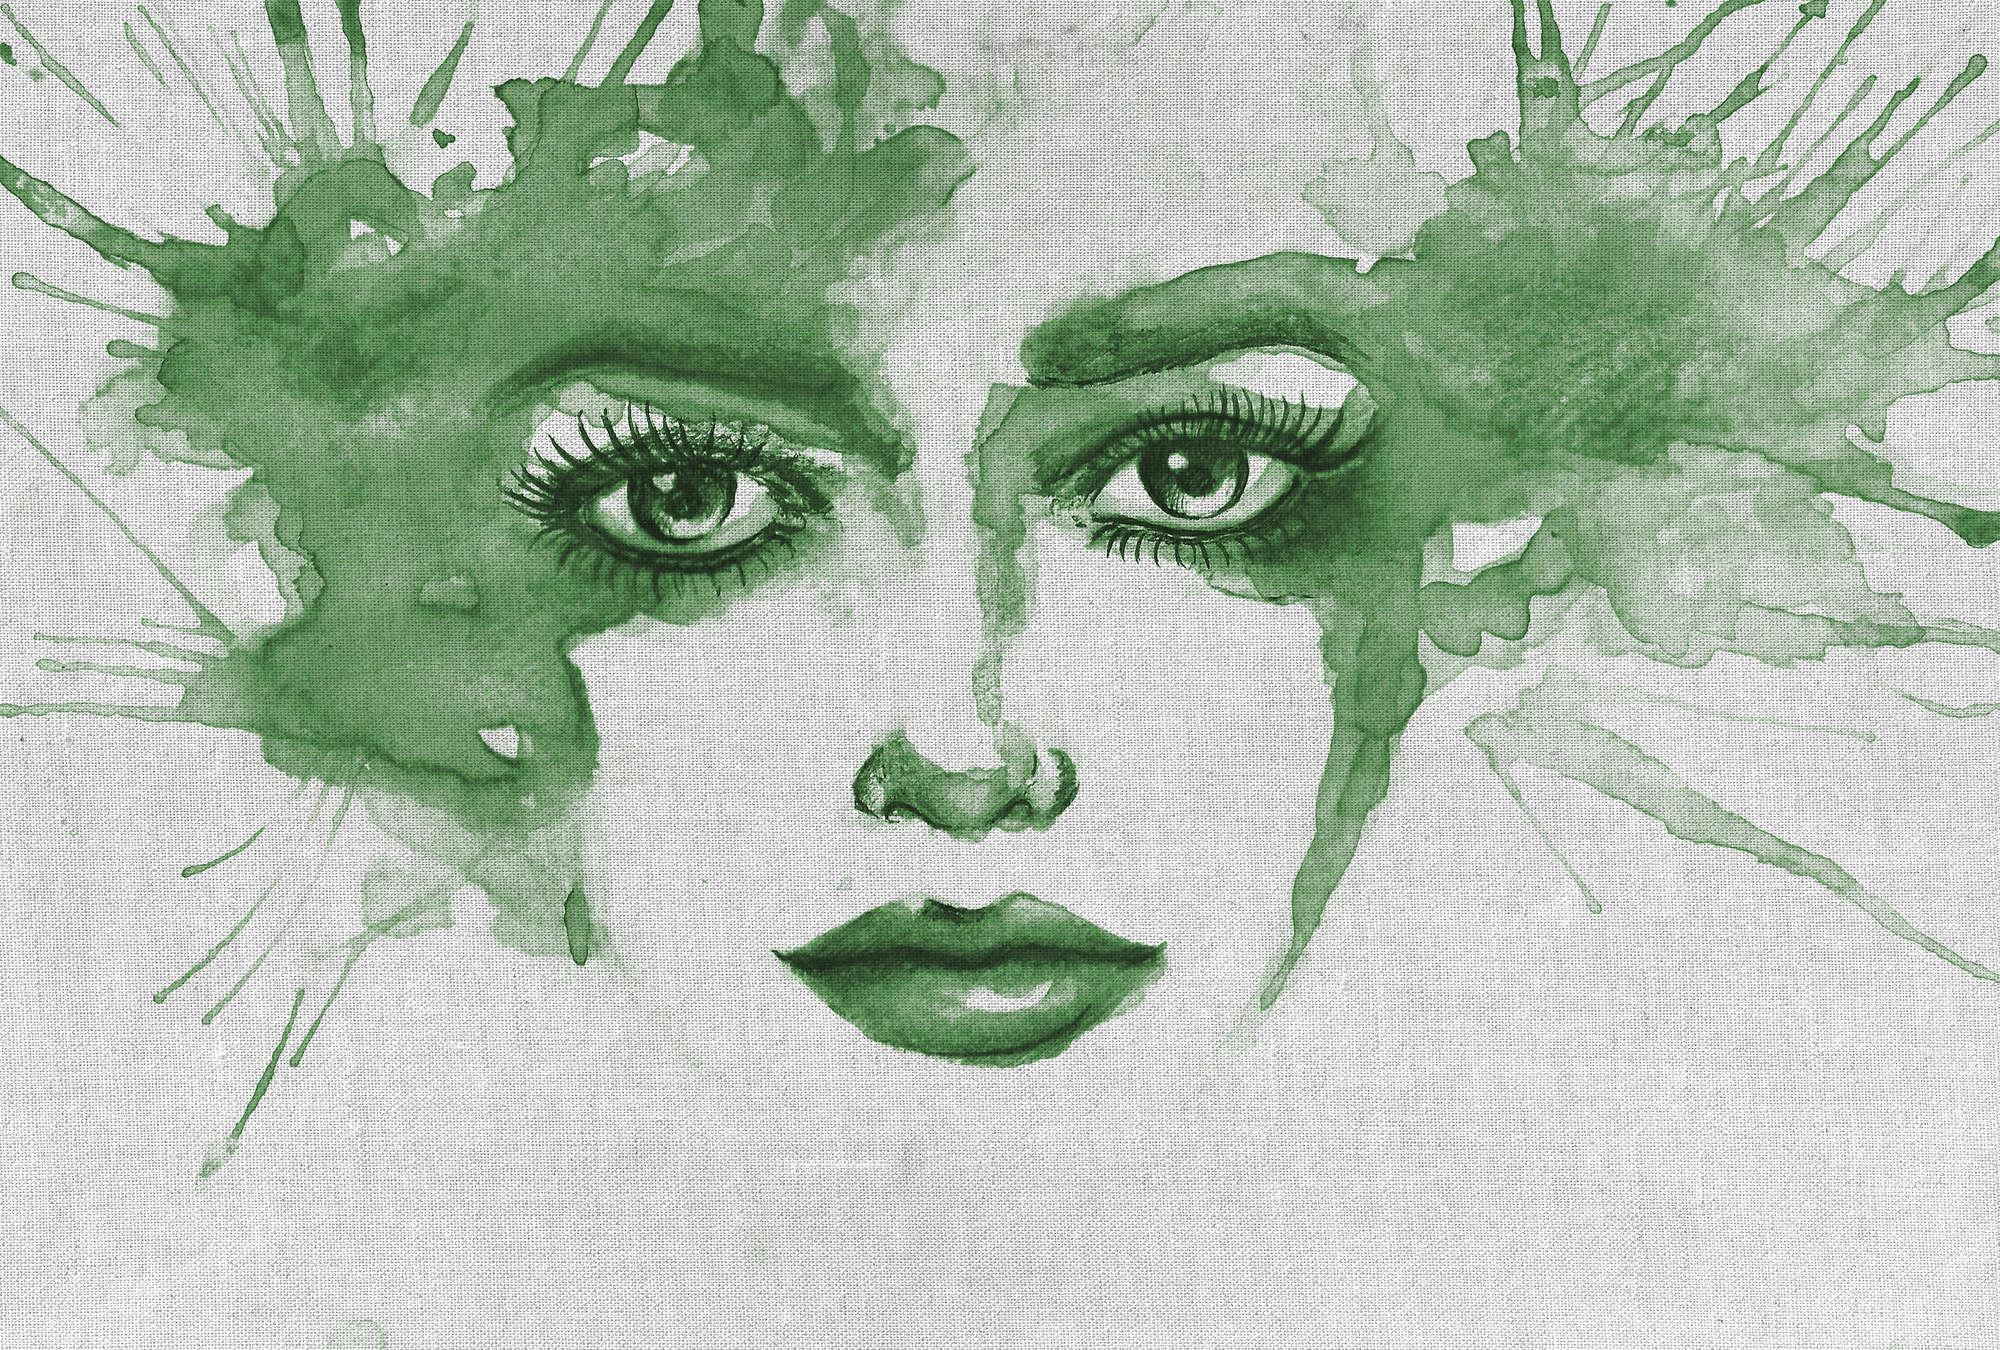             Papier peint artistique Aquarelle & visage de femme - Vert
        